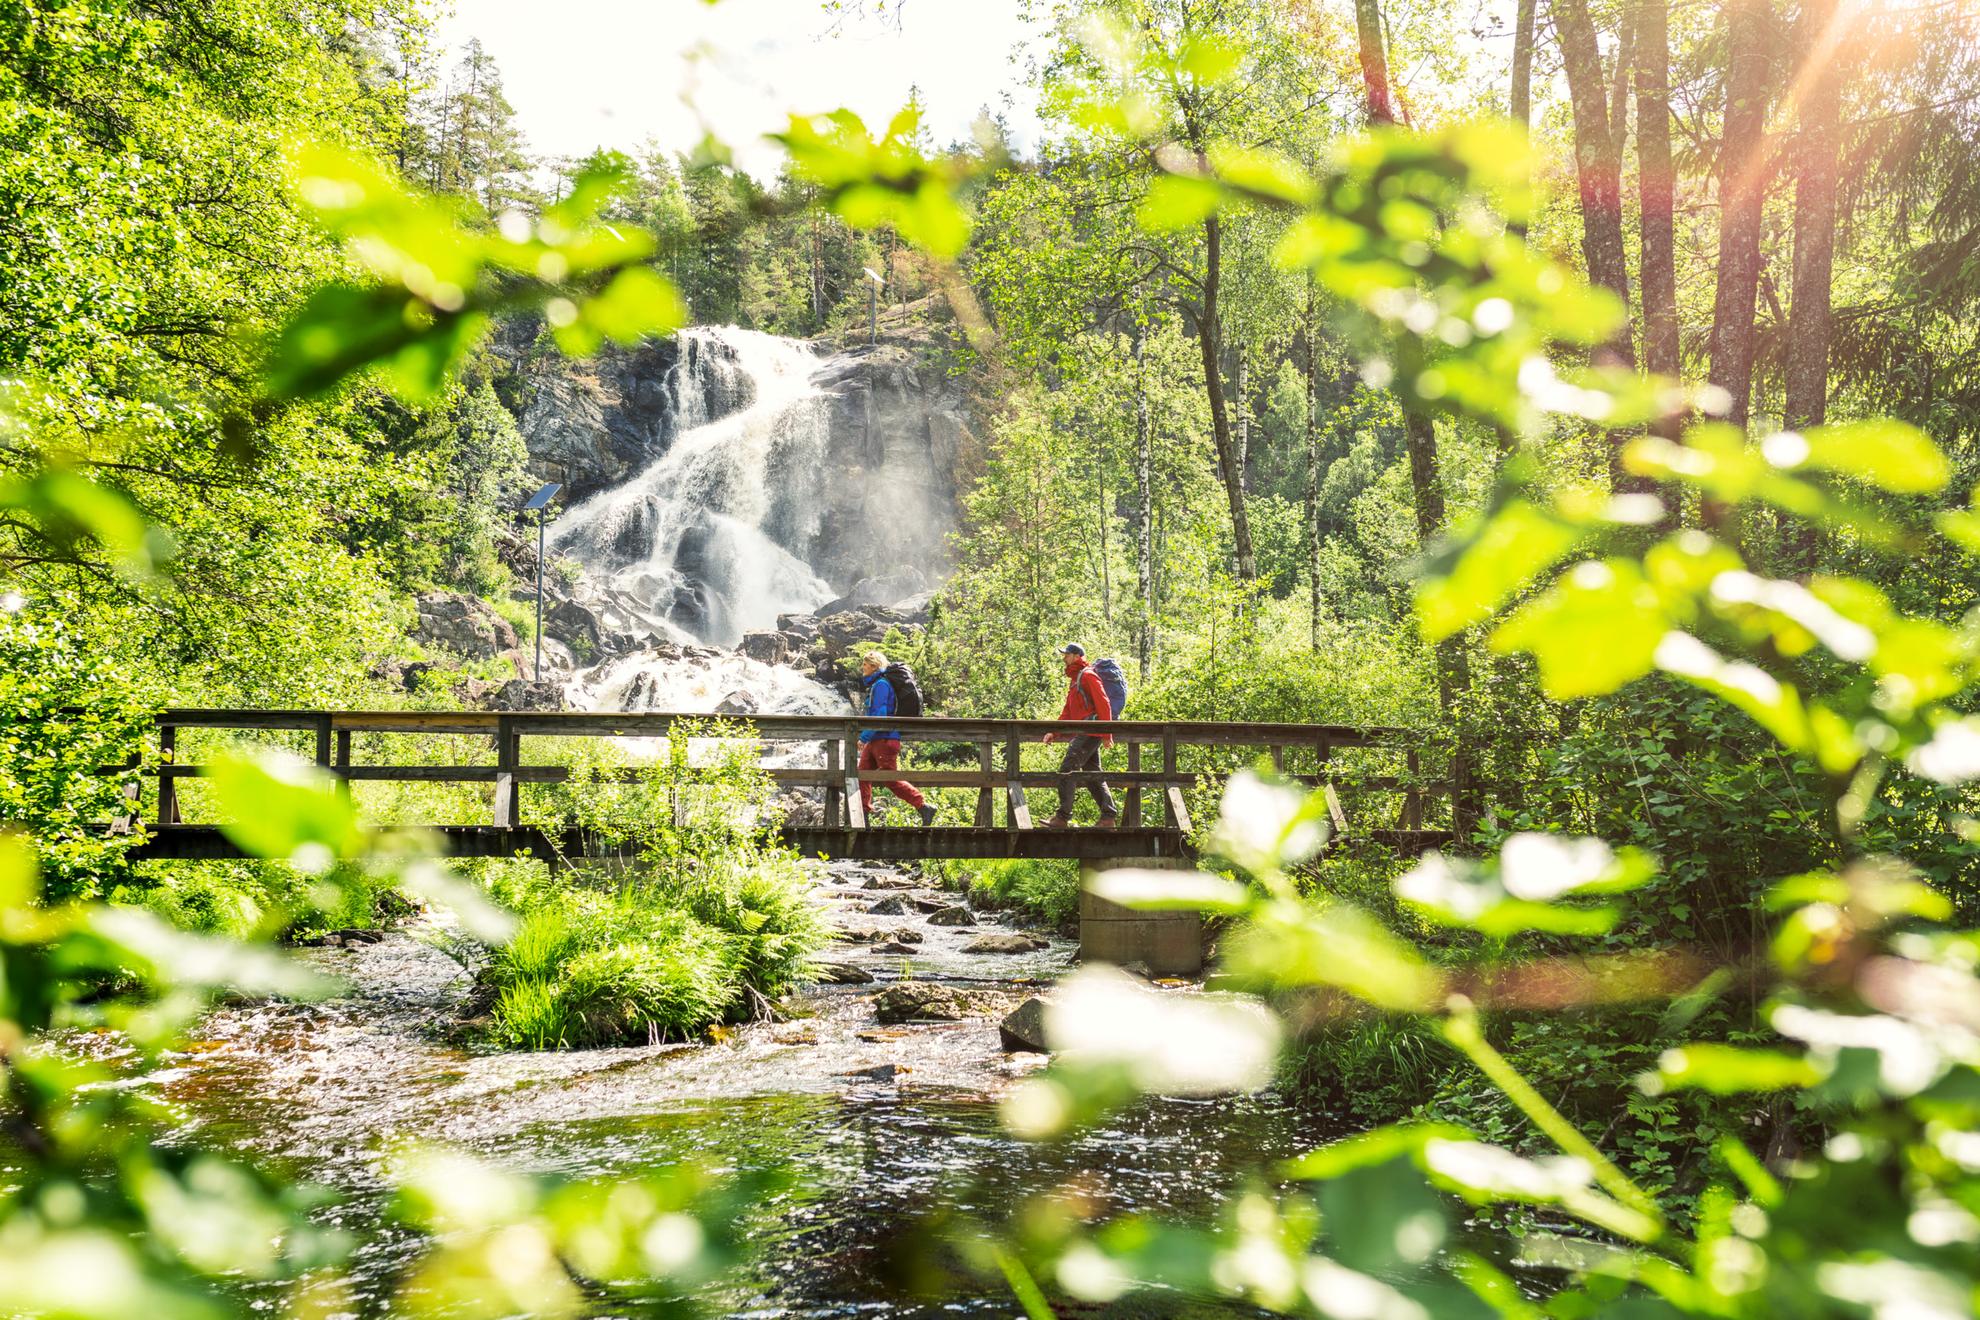 Twee mensen lopen over een houten brug in een bos. Er is een waterval op de achtergrond.